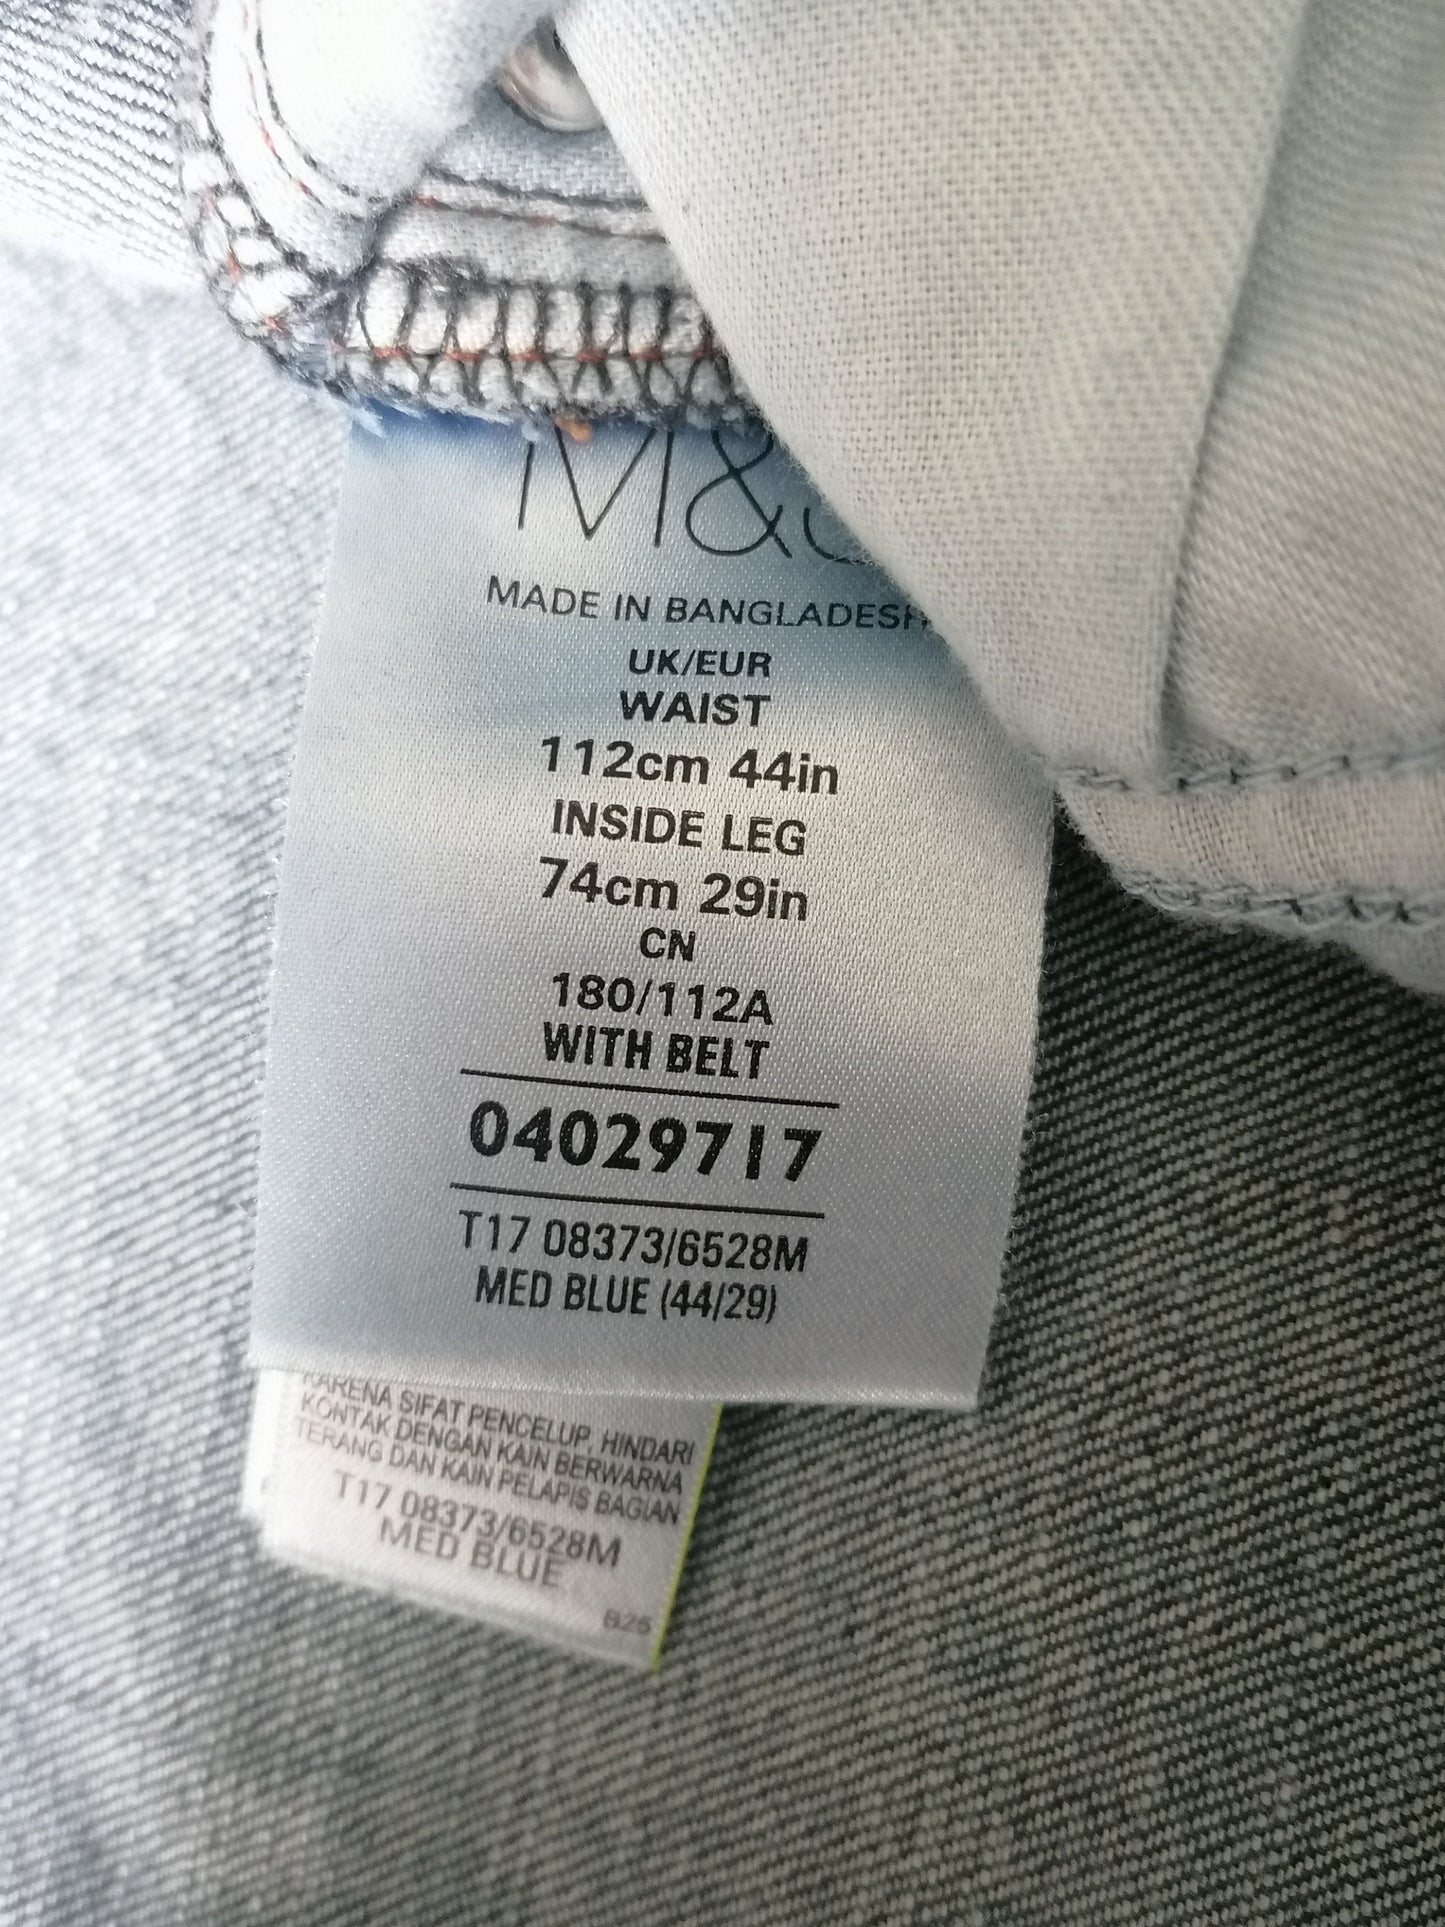 M & S (Marks & Spencer) Jeans. Blau gefärbt. Verjüngt. Größe W44 - L30. Strecken.